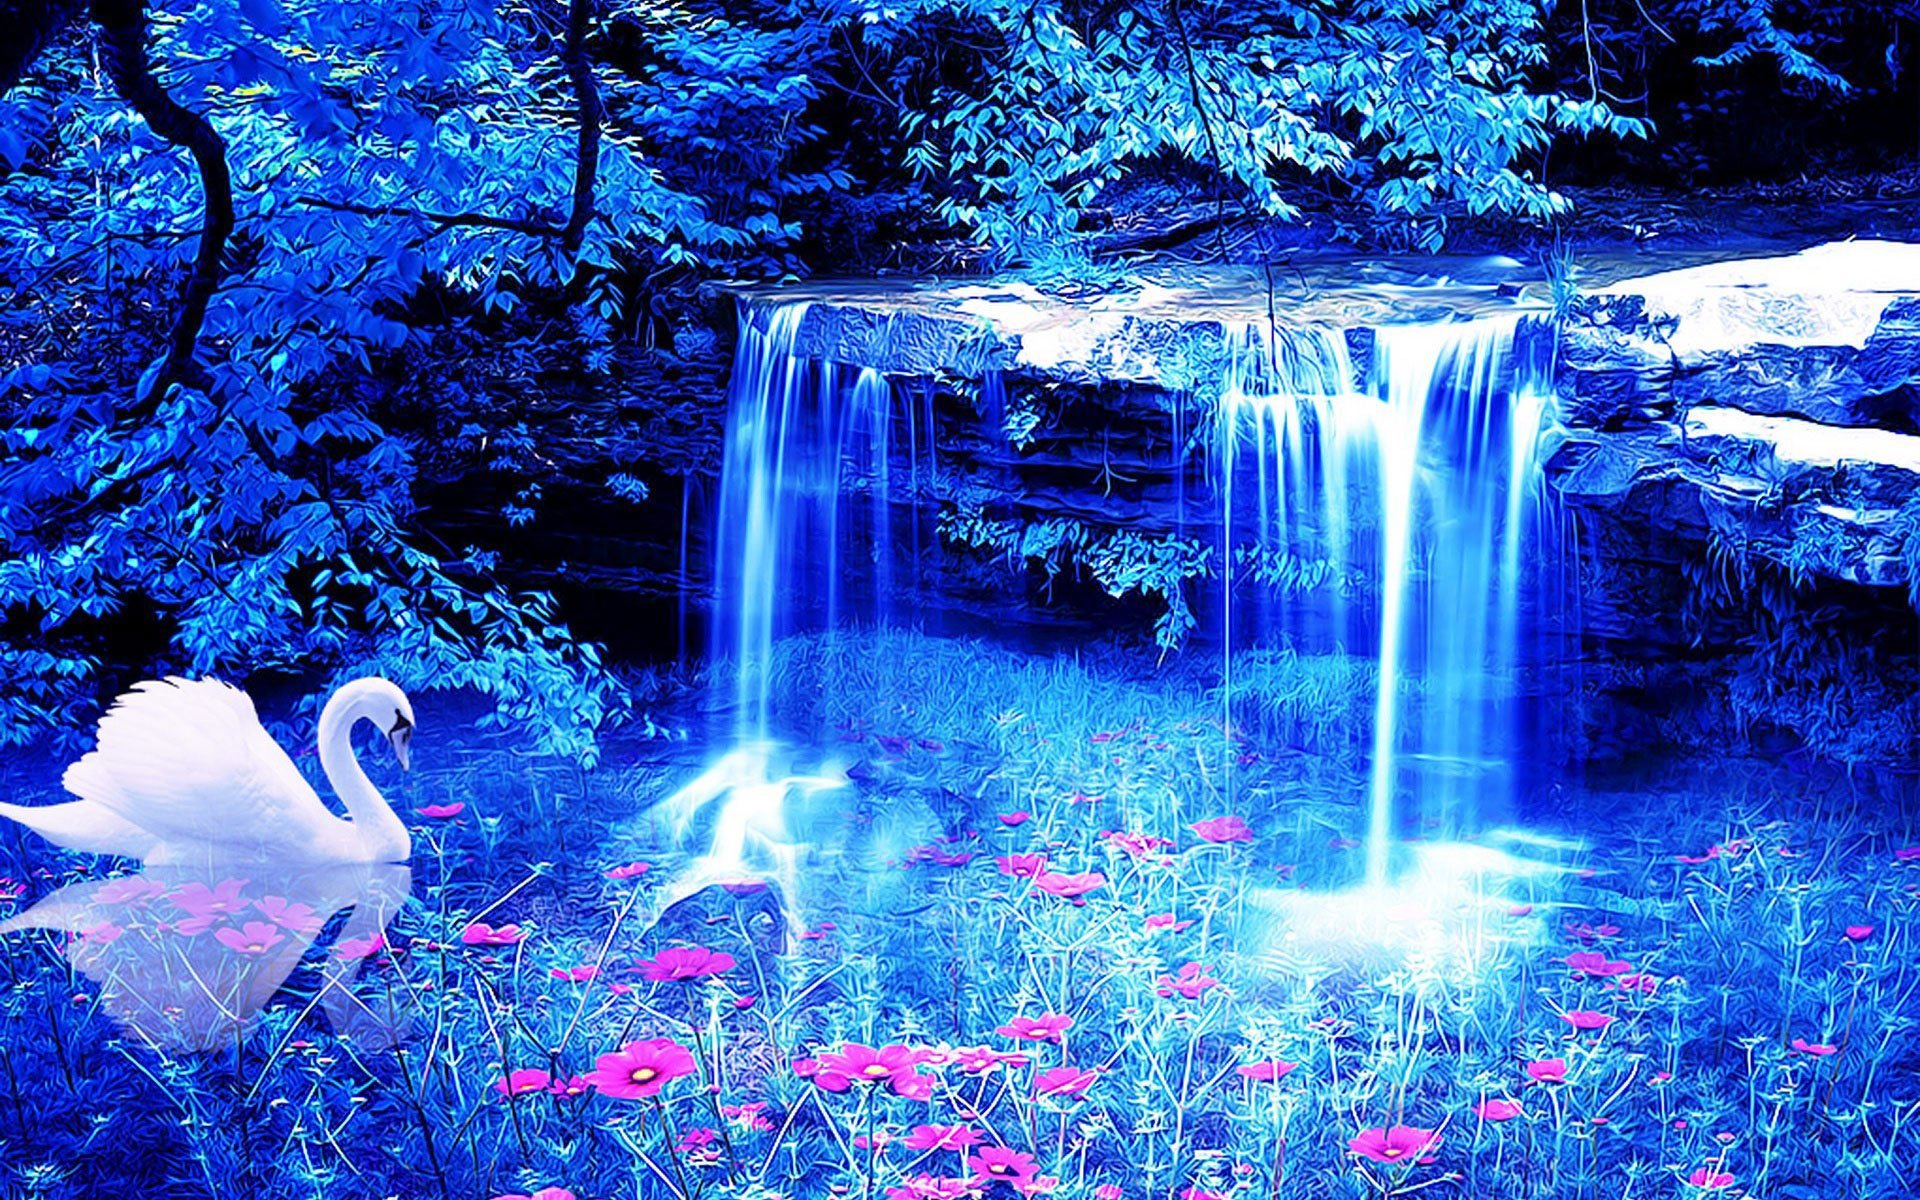 Обои на телефон на большой экран. Живая природа водопады. Сказочный водопад. Красивые картинки. Красивые картины.